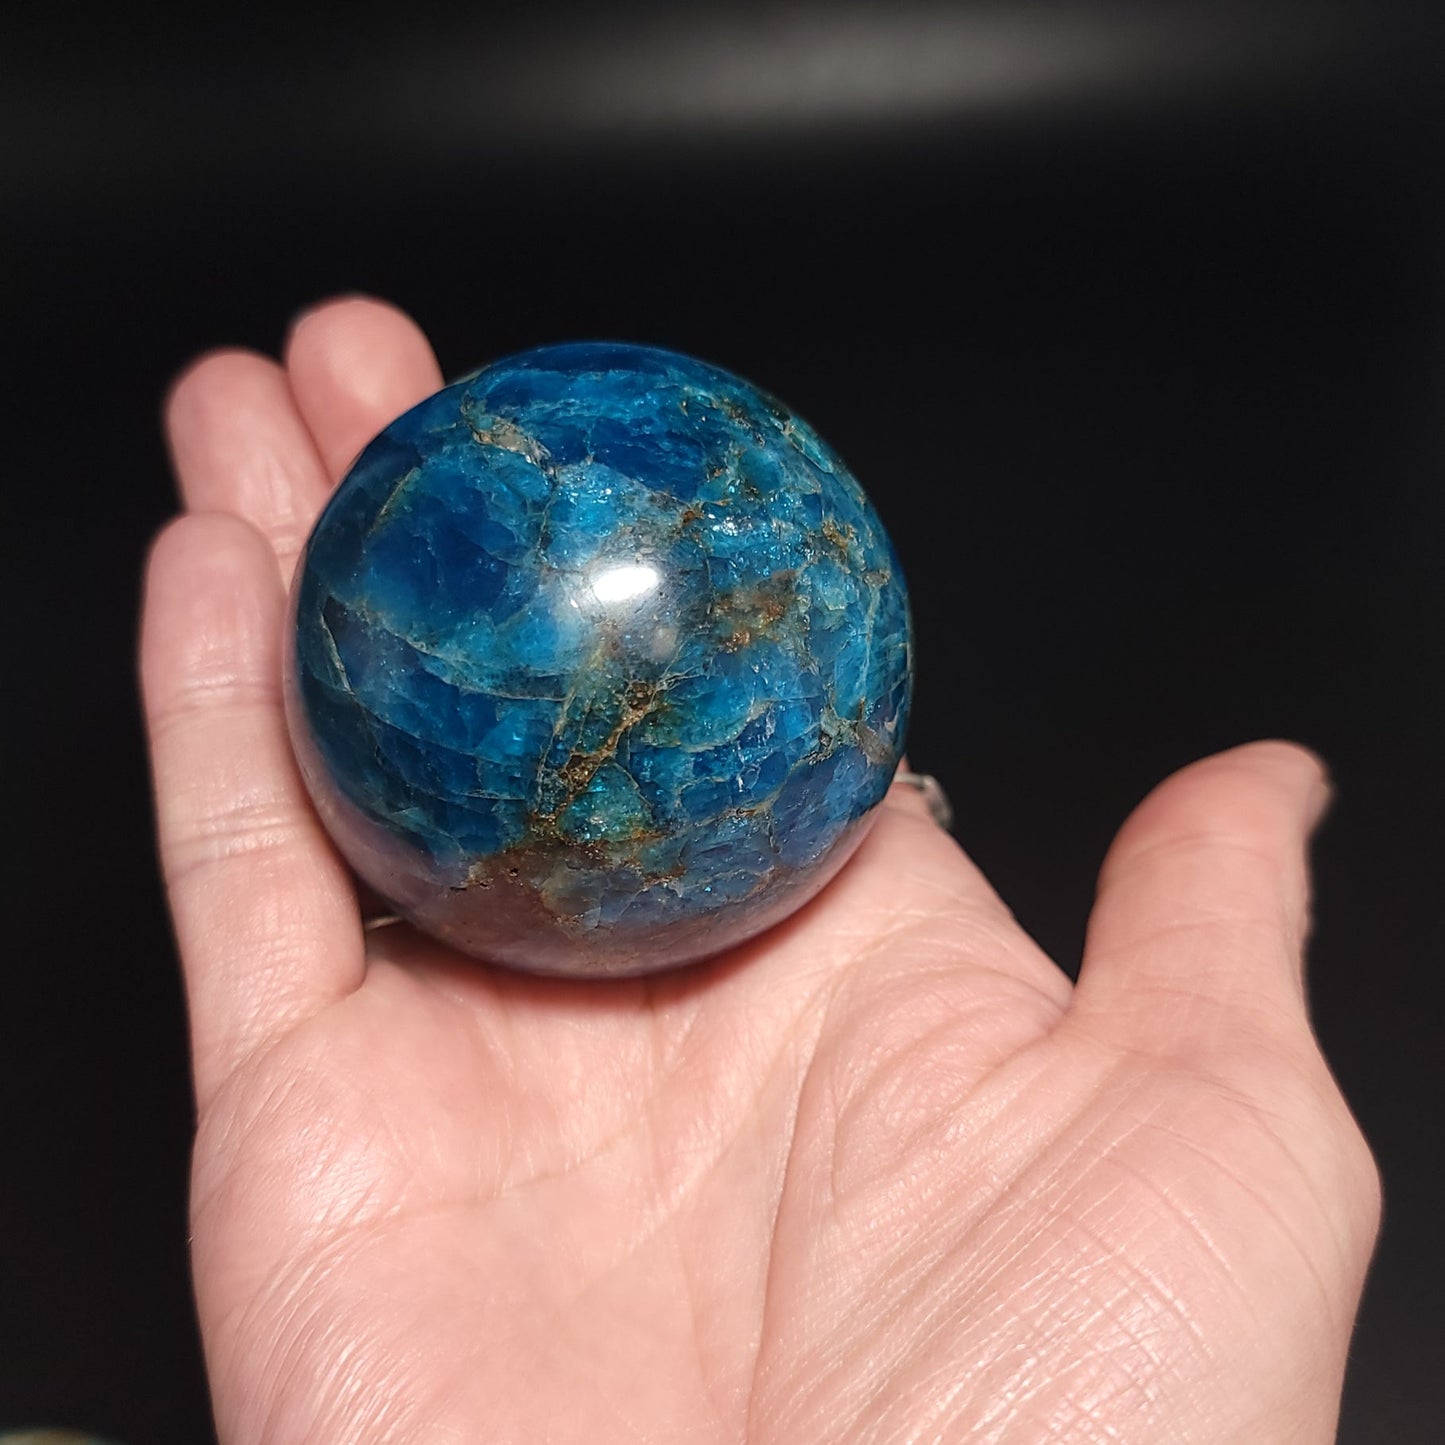 Blue Apatite Sphere 47mm 1.8" 5.5oz 160g